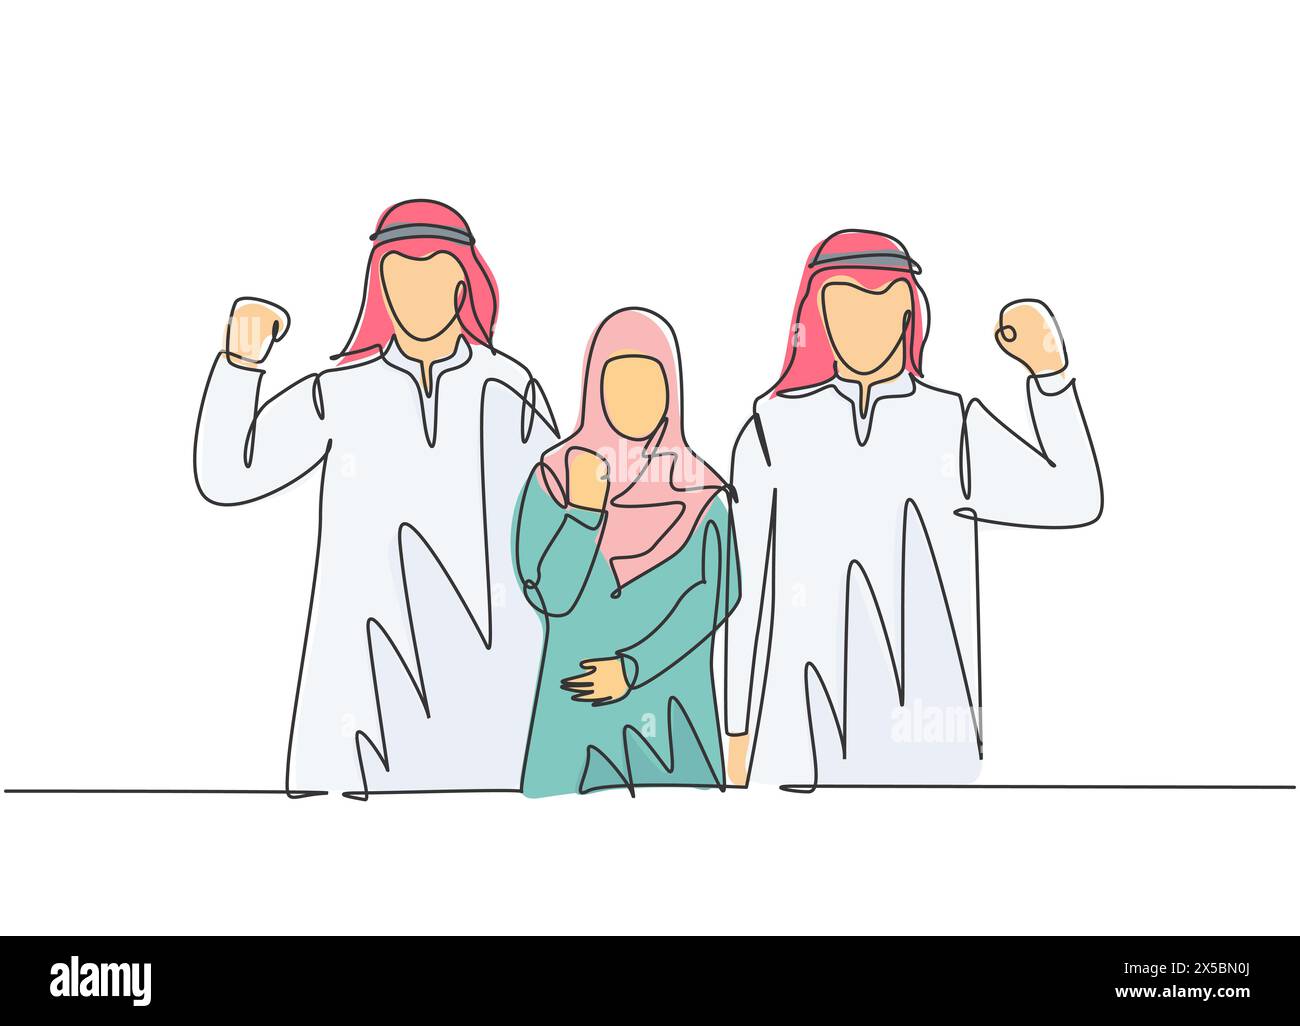 Eine einzige Zeichnung von jungen glücklichen männlichen und weiblichen muslimischen Angestellten, die die Hände heben, um die Arbeitsförderung zu feiern. Saudi-Arabien Tuch Kopftuch, Hijab. Stock Vektor